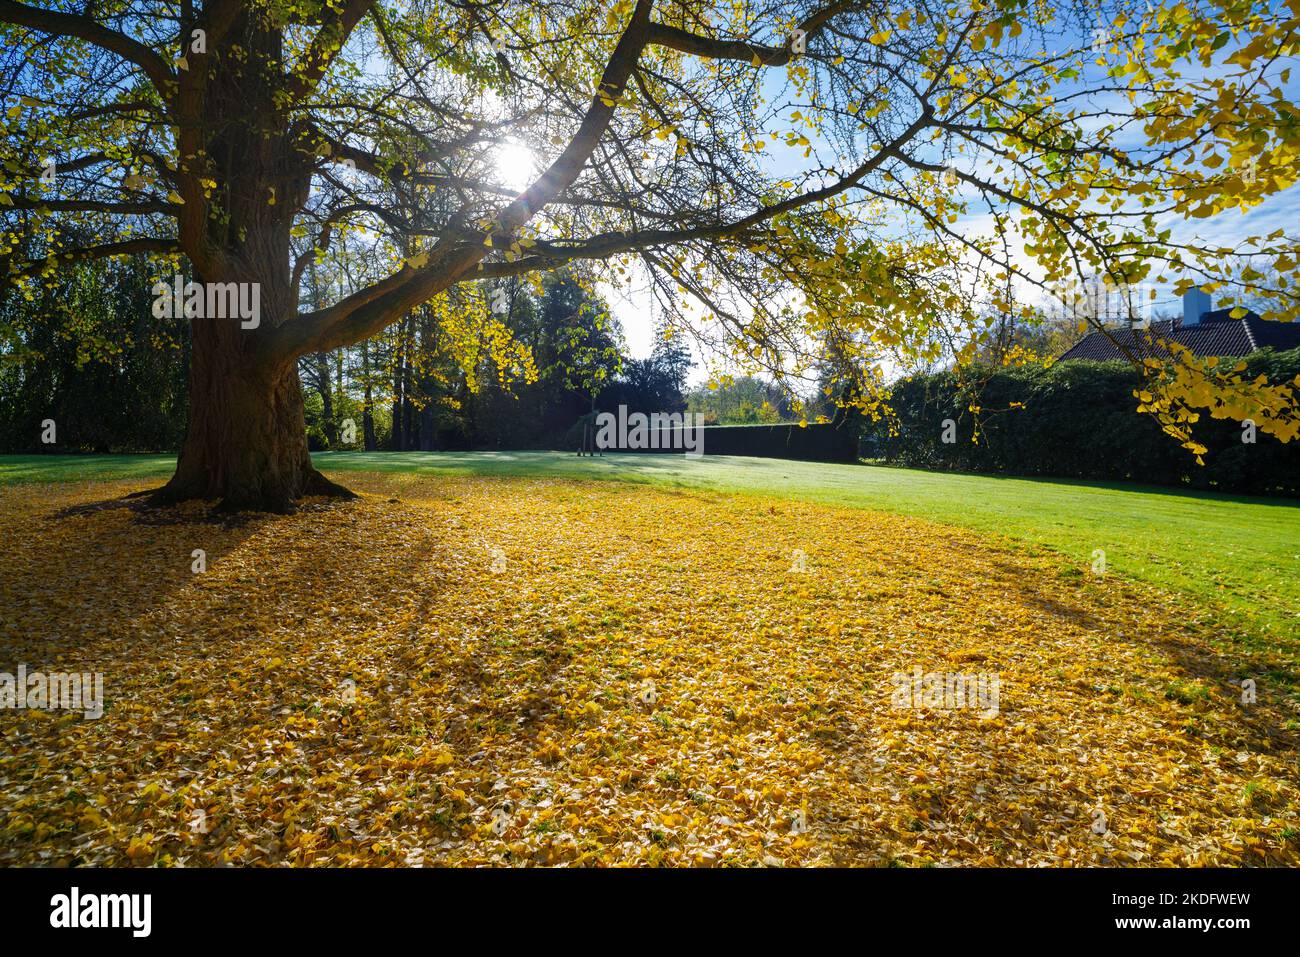 hermosa vista bajo un árbol biloba de ginkgo en un parque de otoño Foto de stock